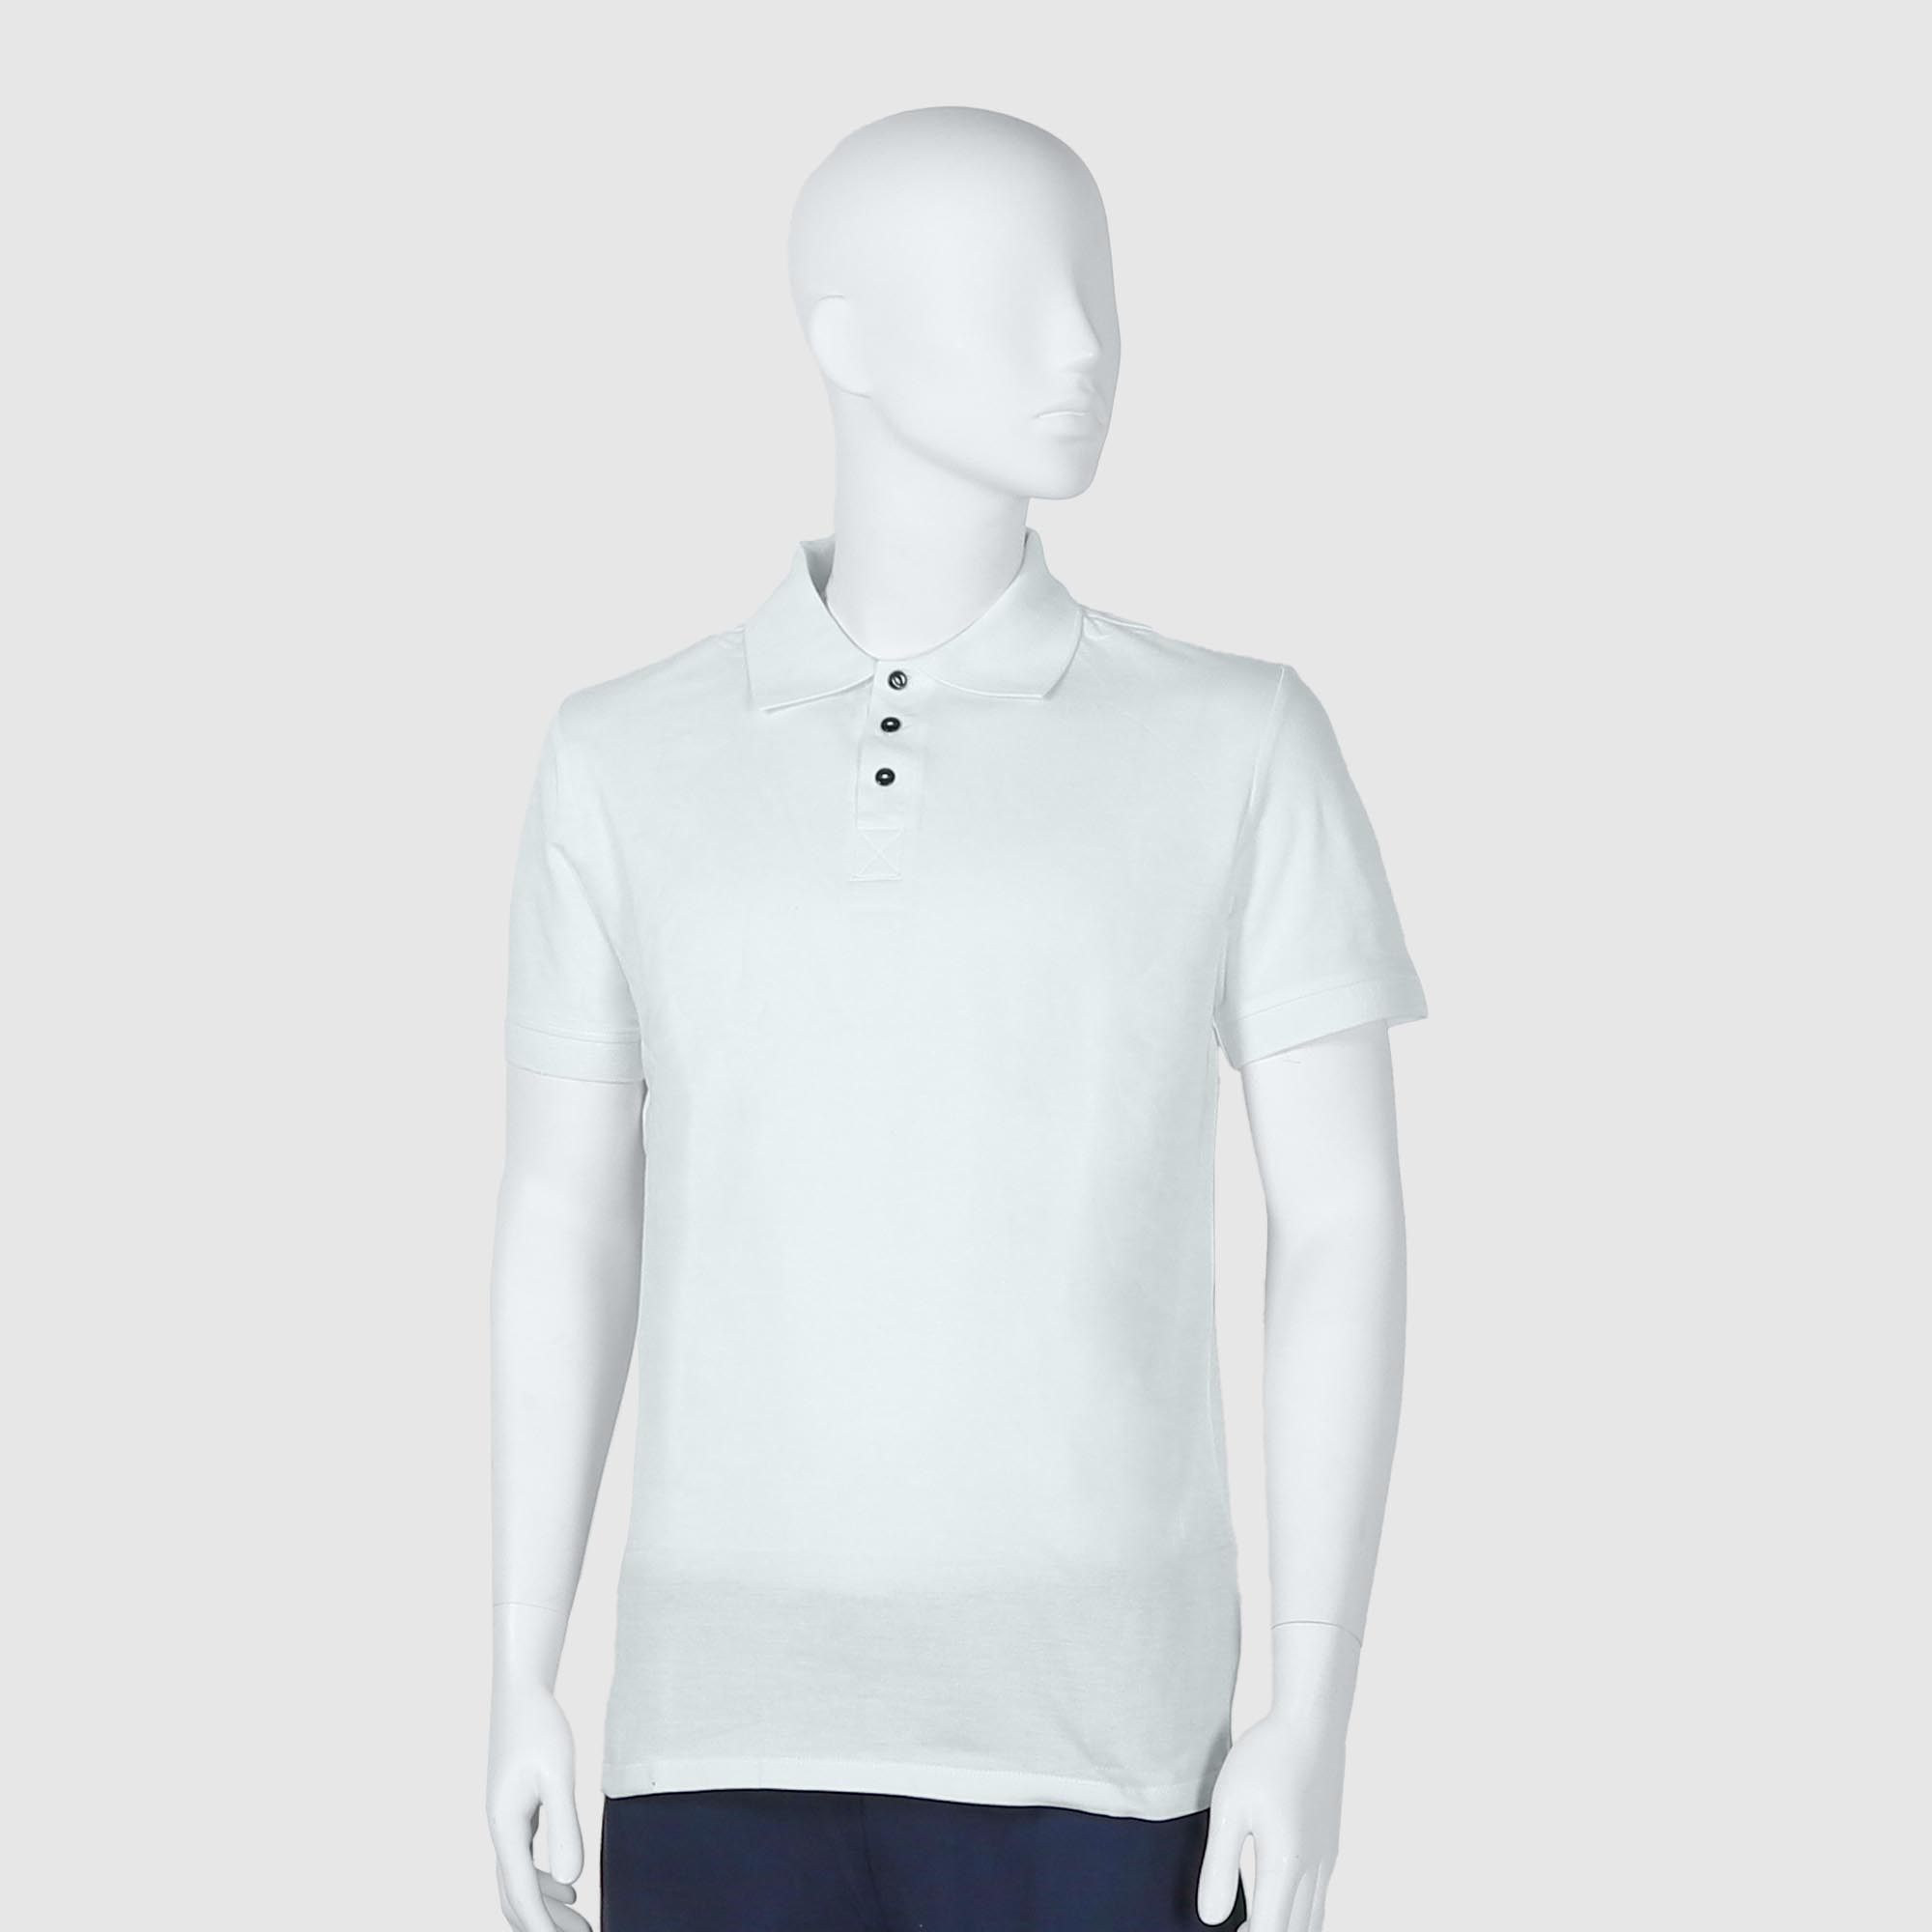 Мужская футболка-поло Diva Teks белая (DTD-07), цвет белый, размер 52-54 - фото 1